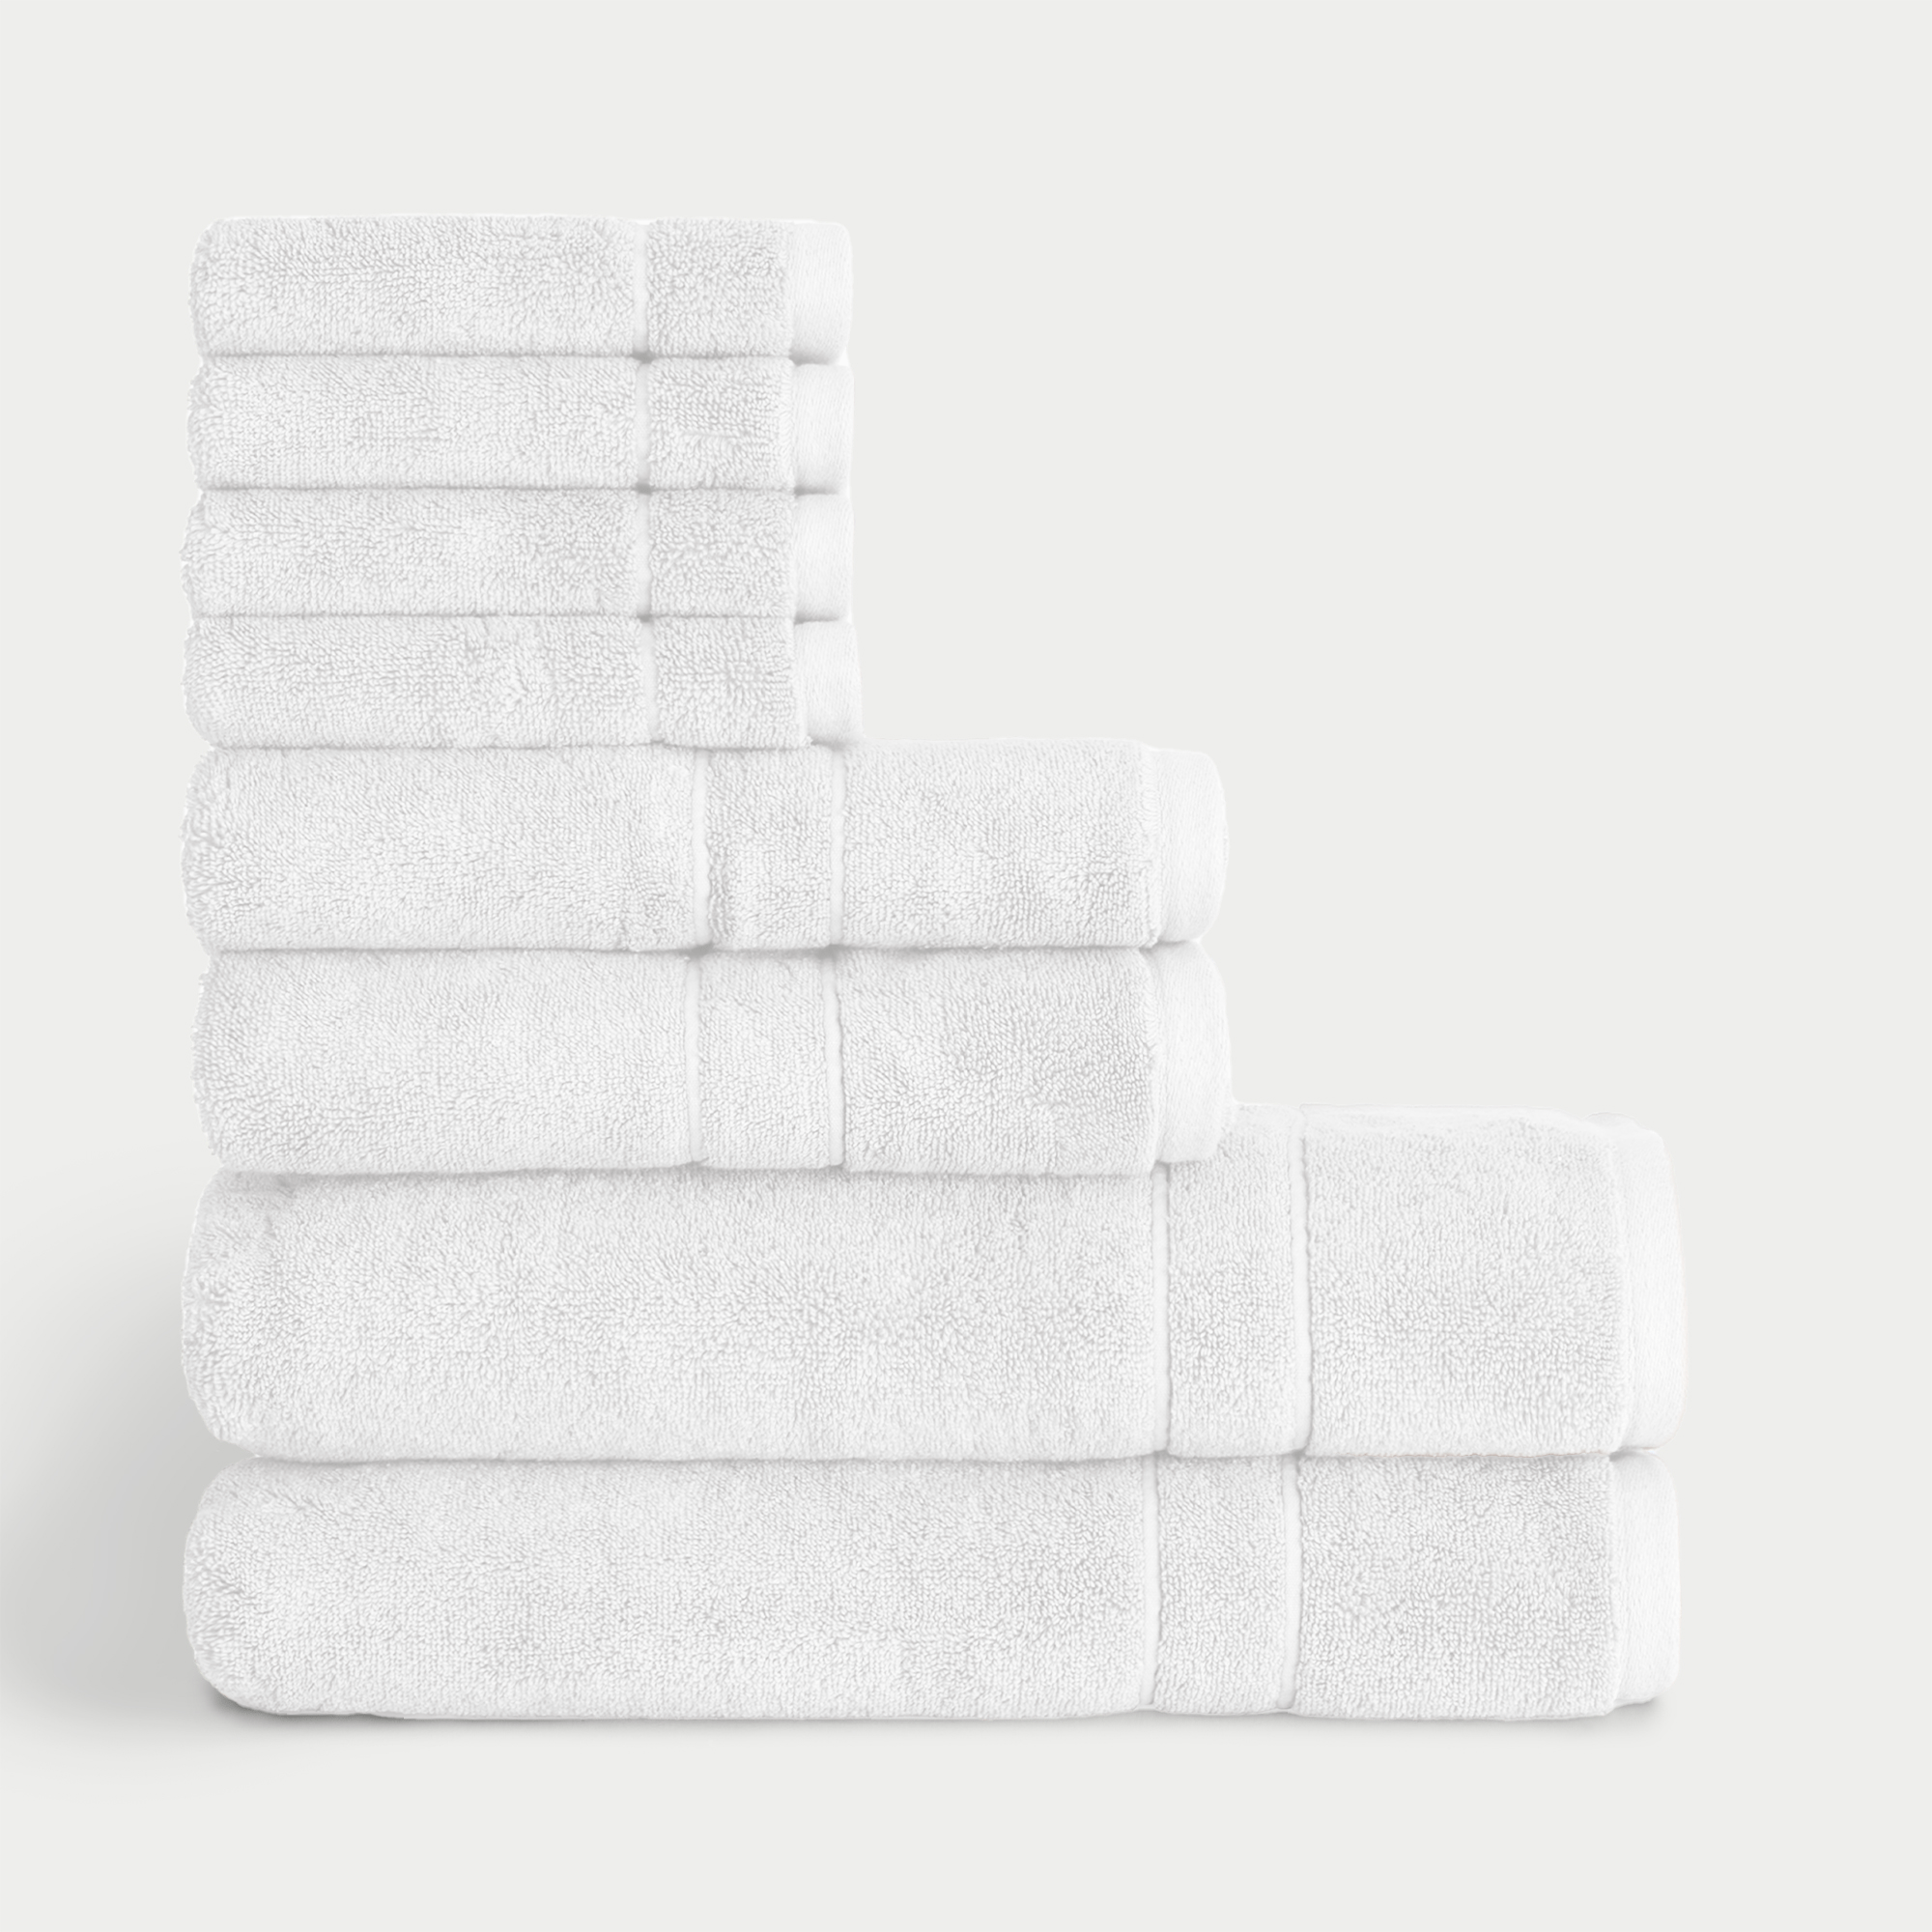 Premium Plush Bath Towel Set in the color White. Photo of Premium Plush Bath Towel Set taken with white background |Color:White